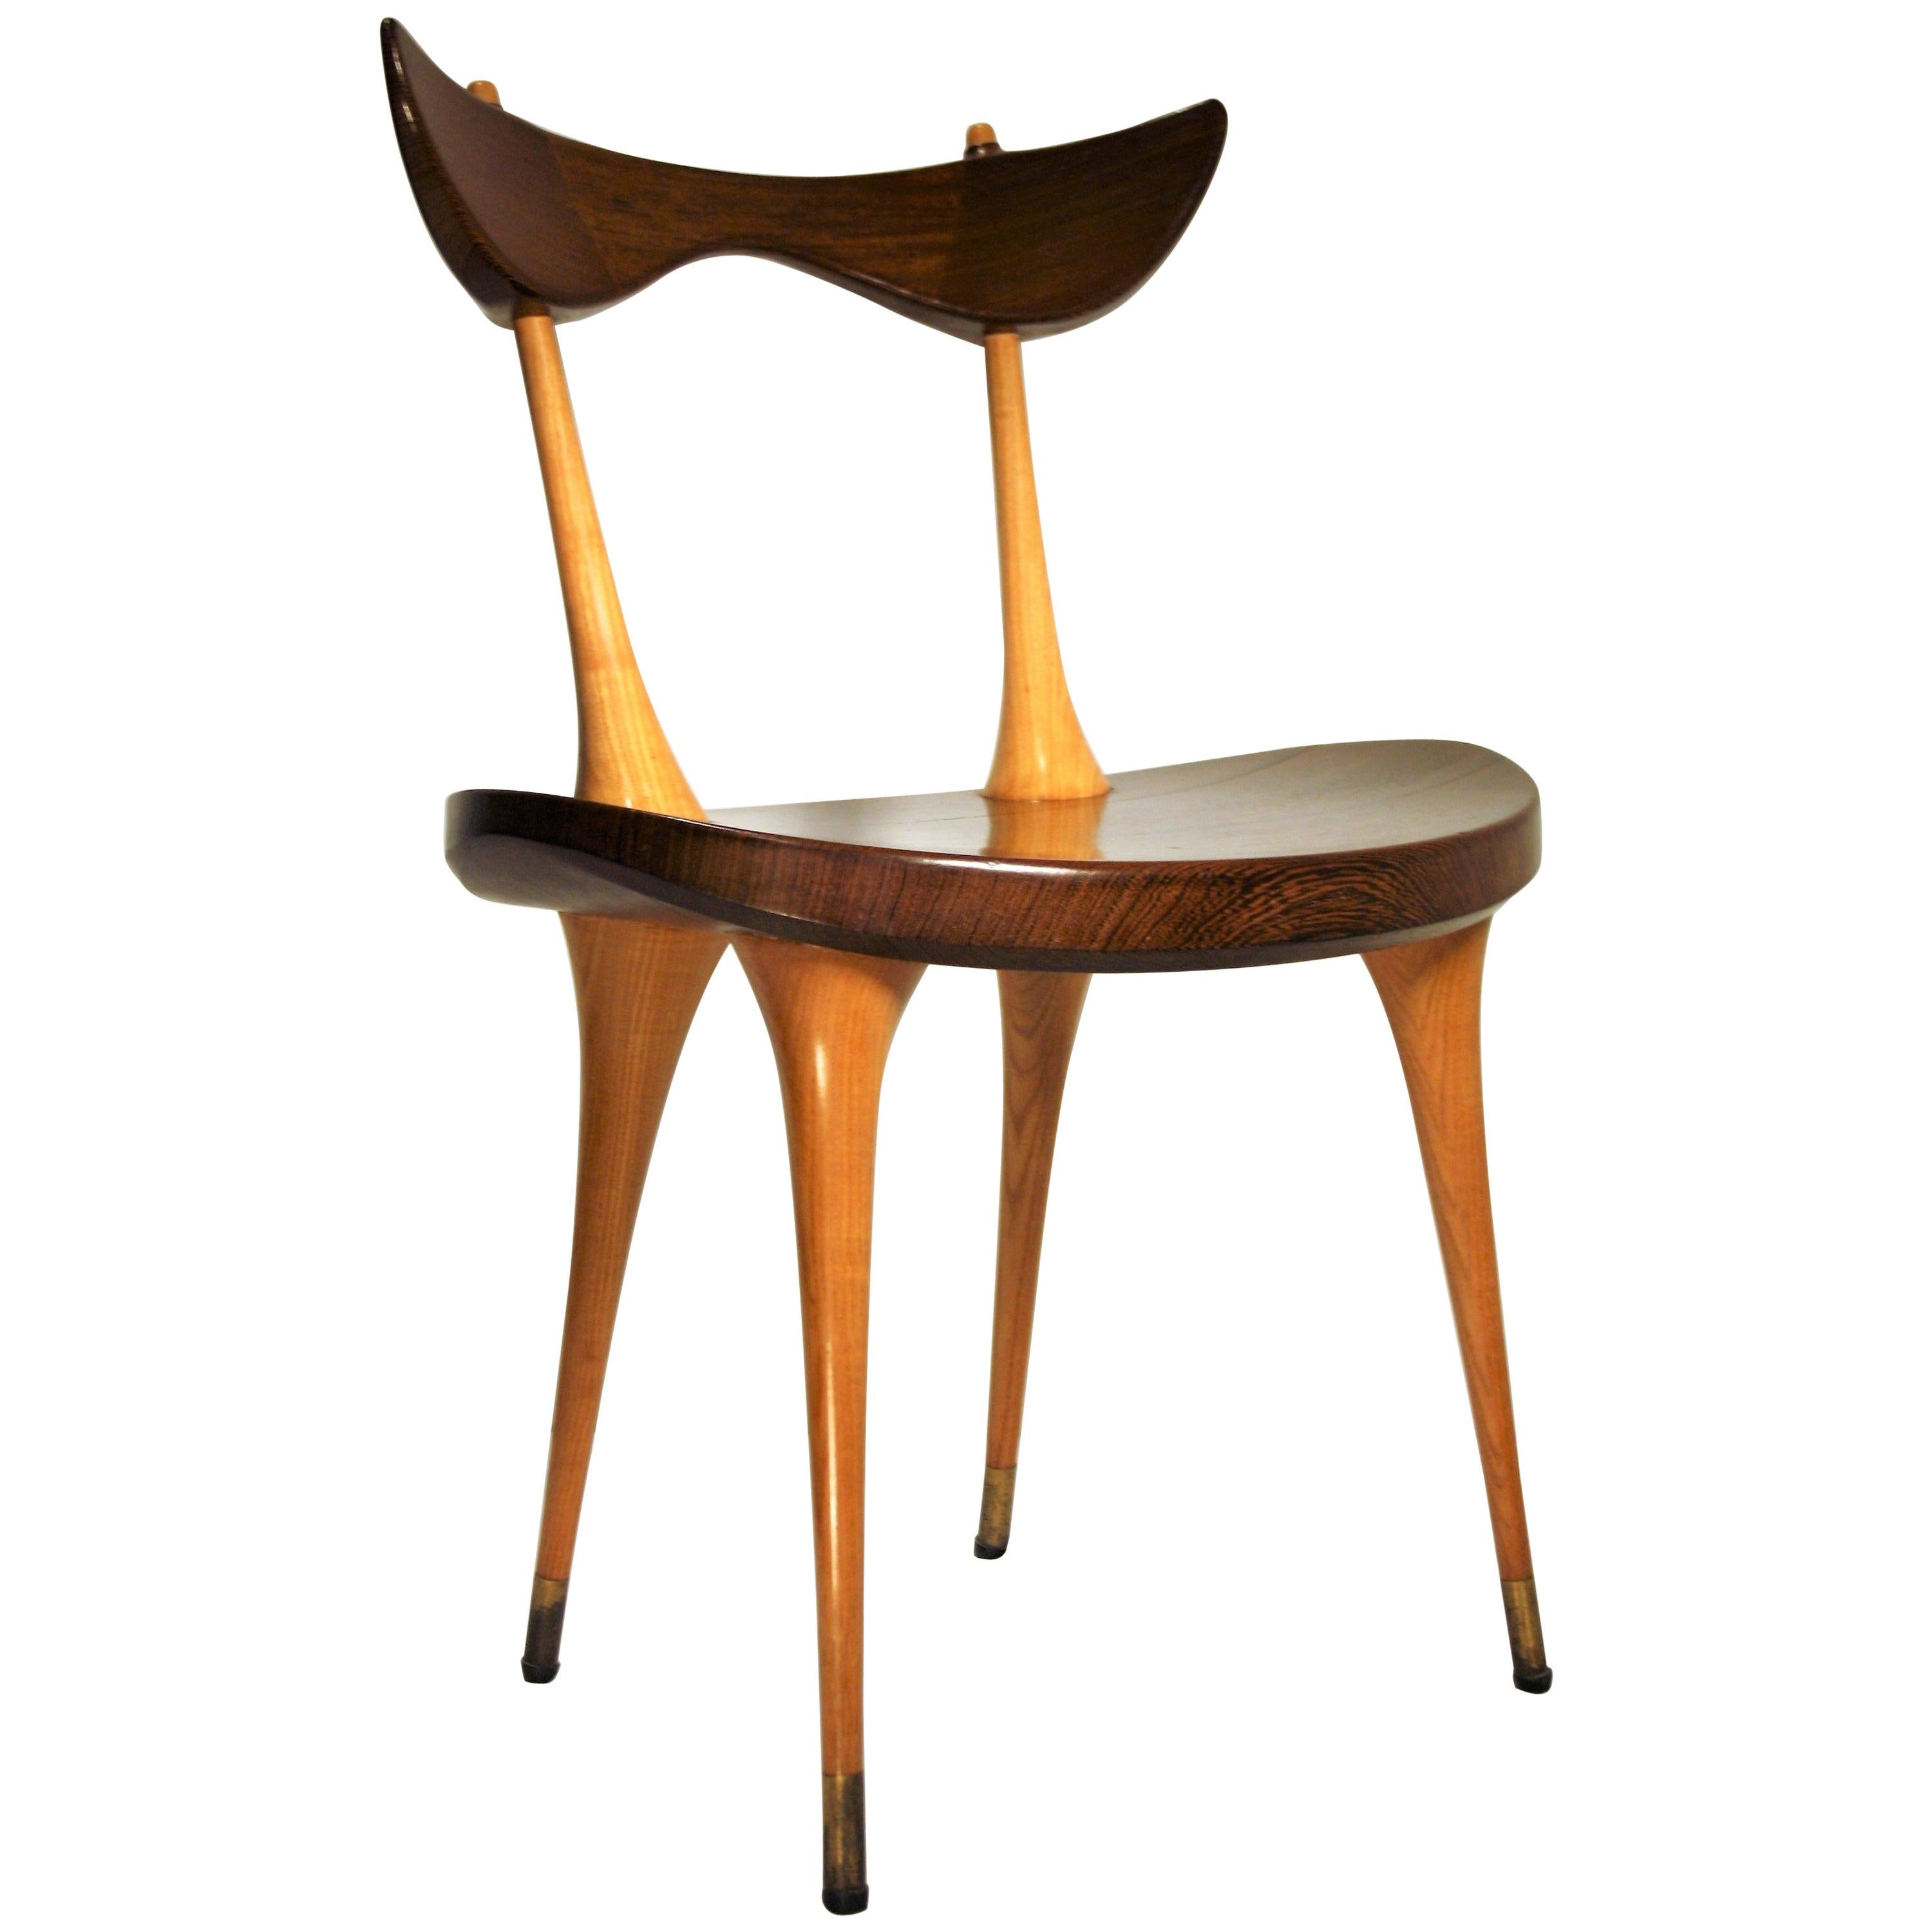 Renaat Braem Organic Chair, 1952